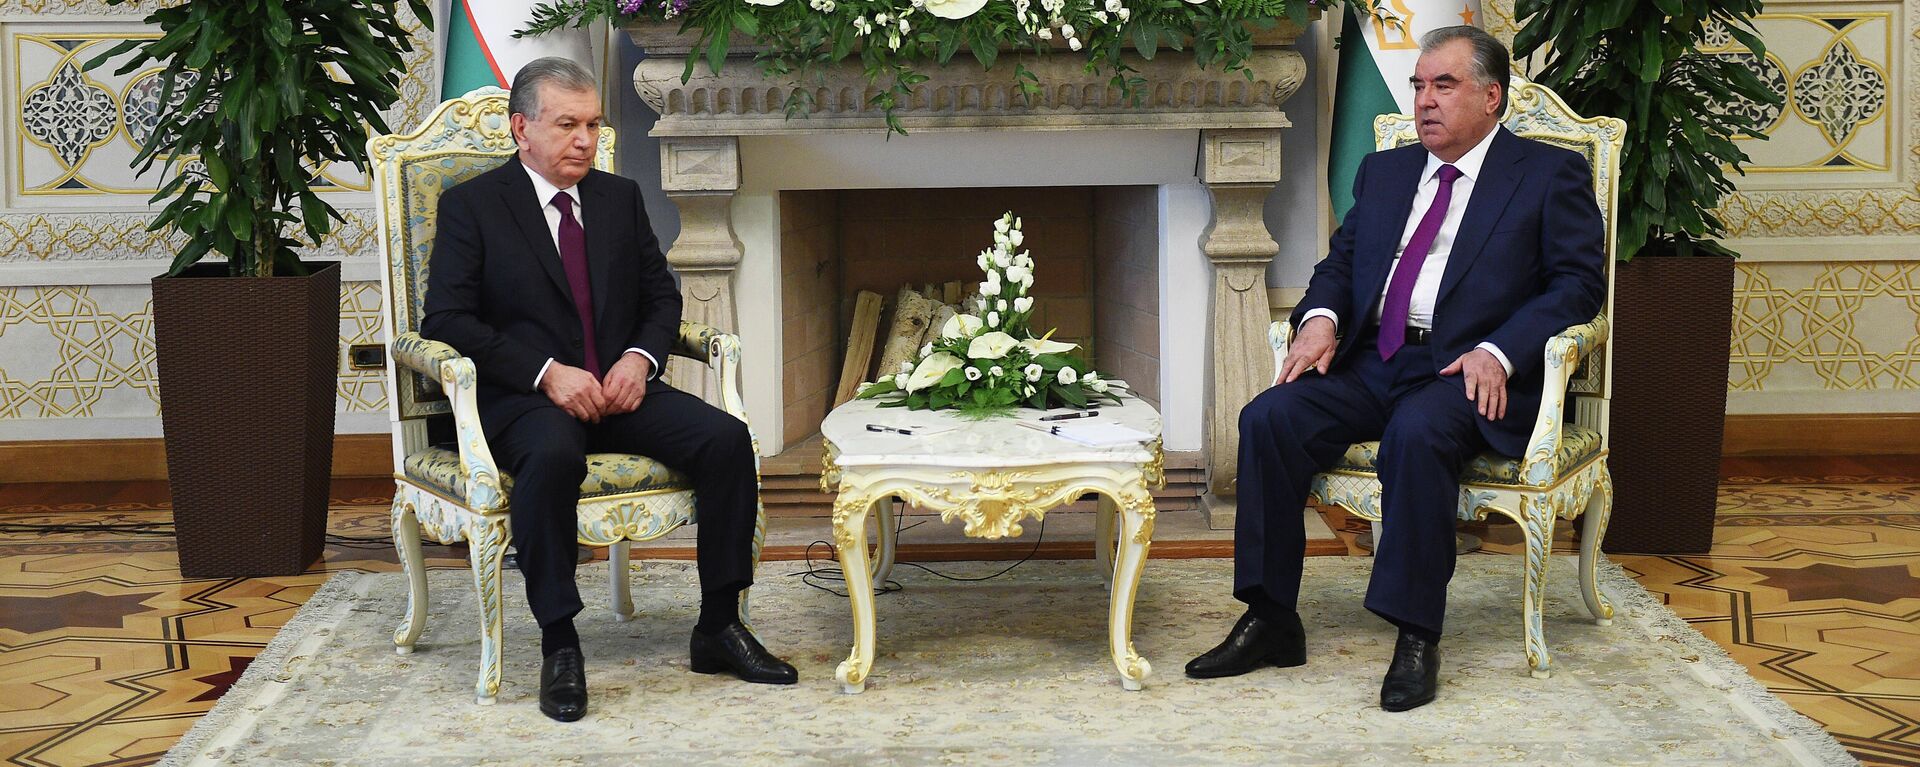 Президент Республики Узбекистан Шавкат Мирзиёев прибыл с официальным визитом в Республику Таджикистан - Sputnik Тоҷикистон, 1920, 21.07.2021